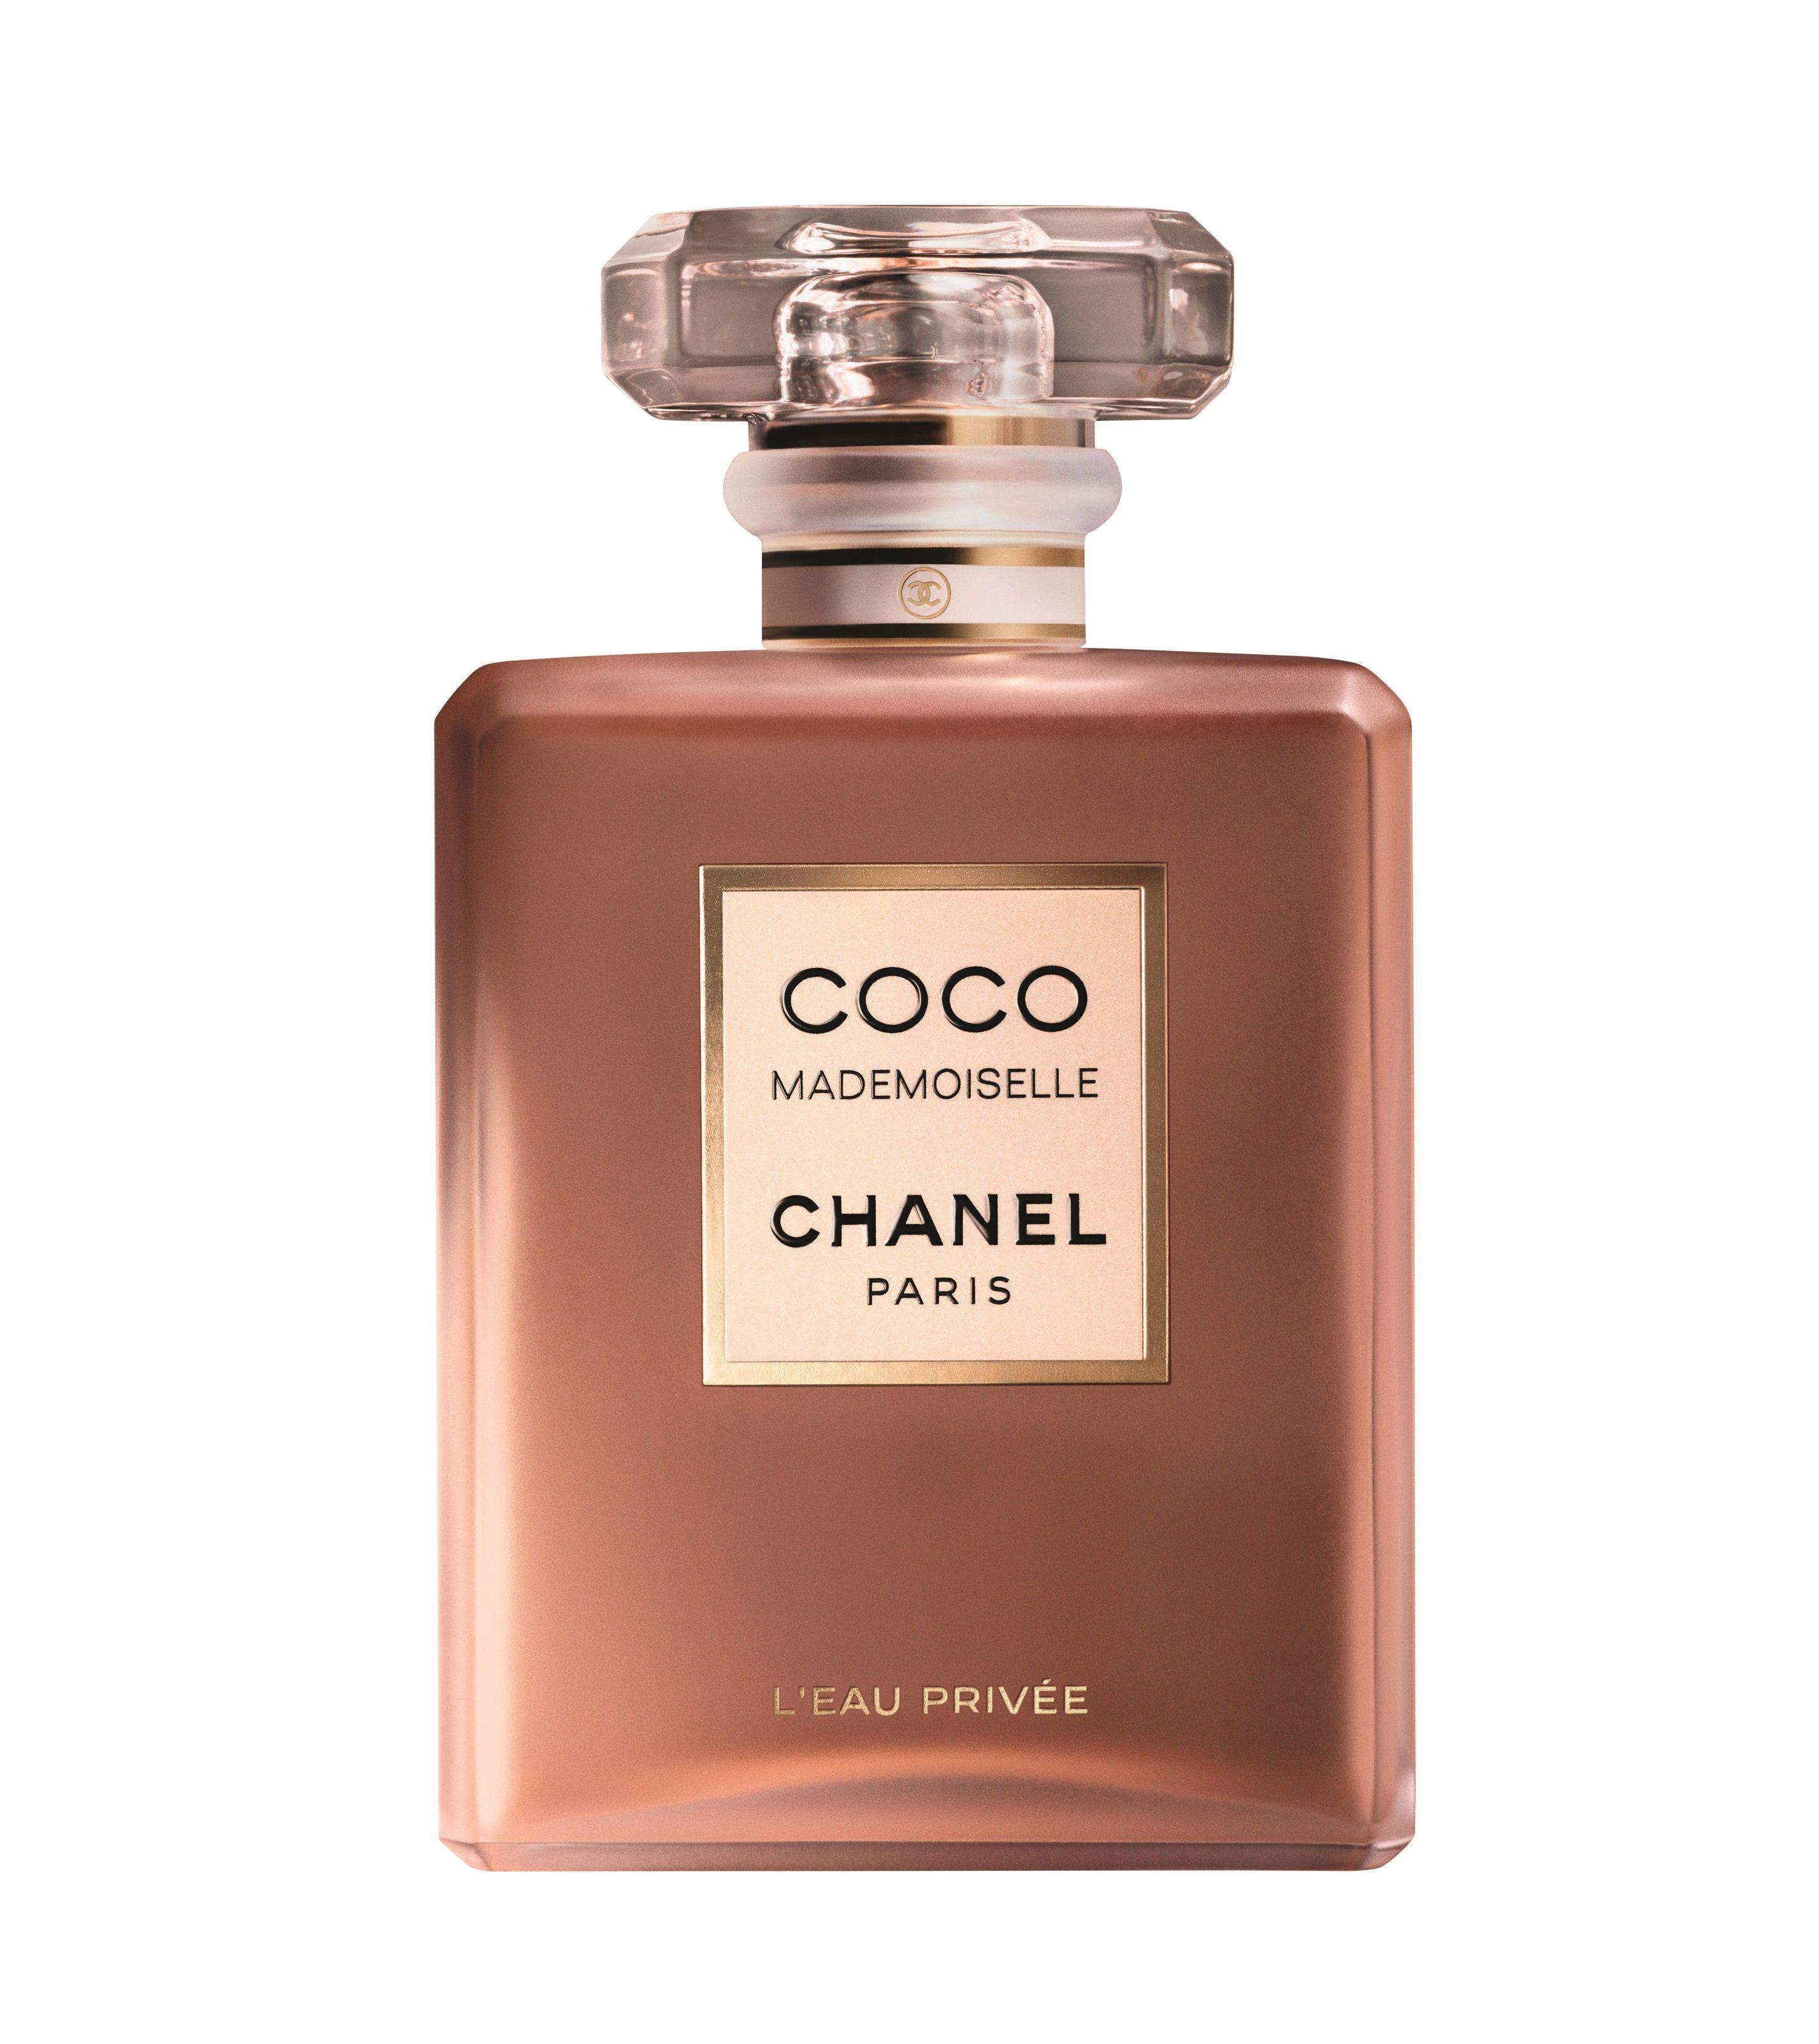 Coco Mademoiselle L Eau Priv E Chanel Parfum Ein Neues Parfum F R Frauen